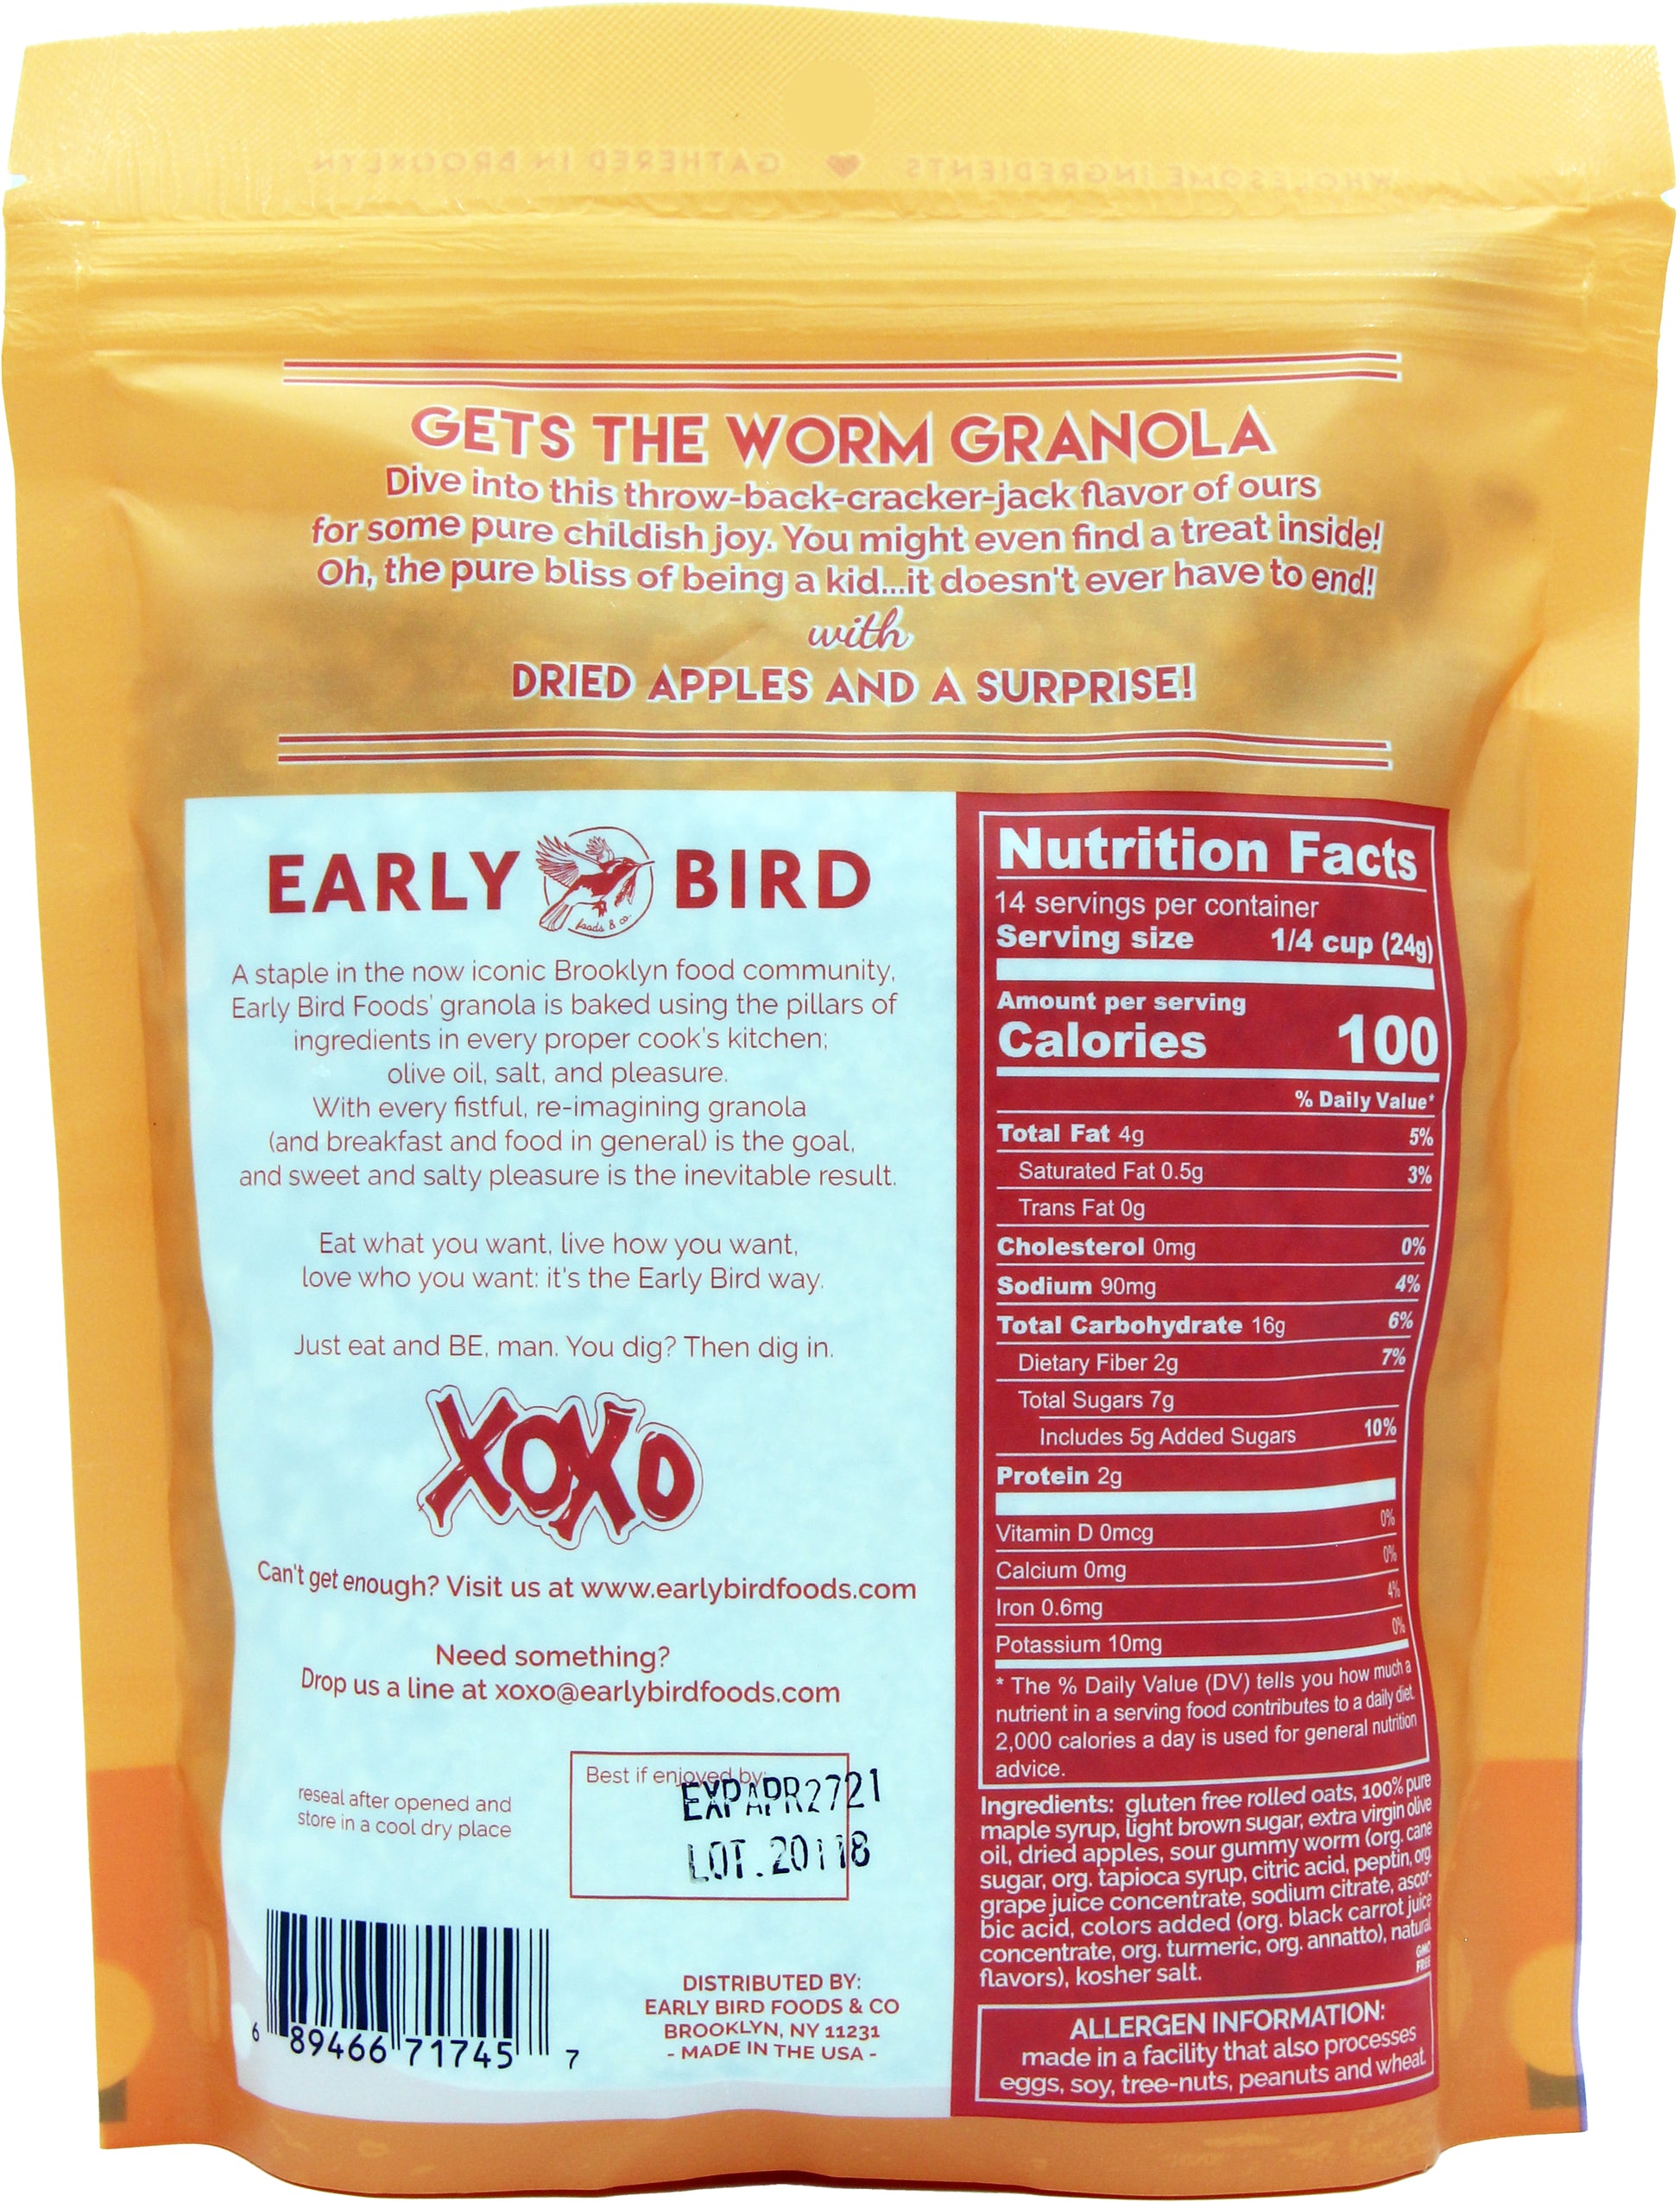 FARMHAND'S CHOICE – Early Bird Foods & Co.